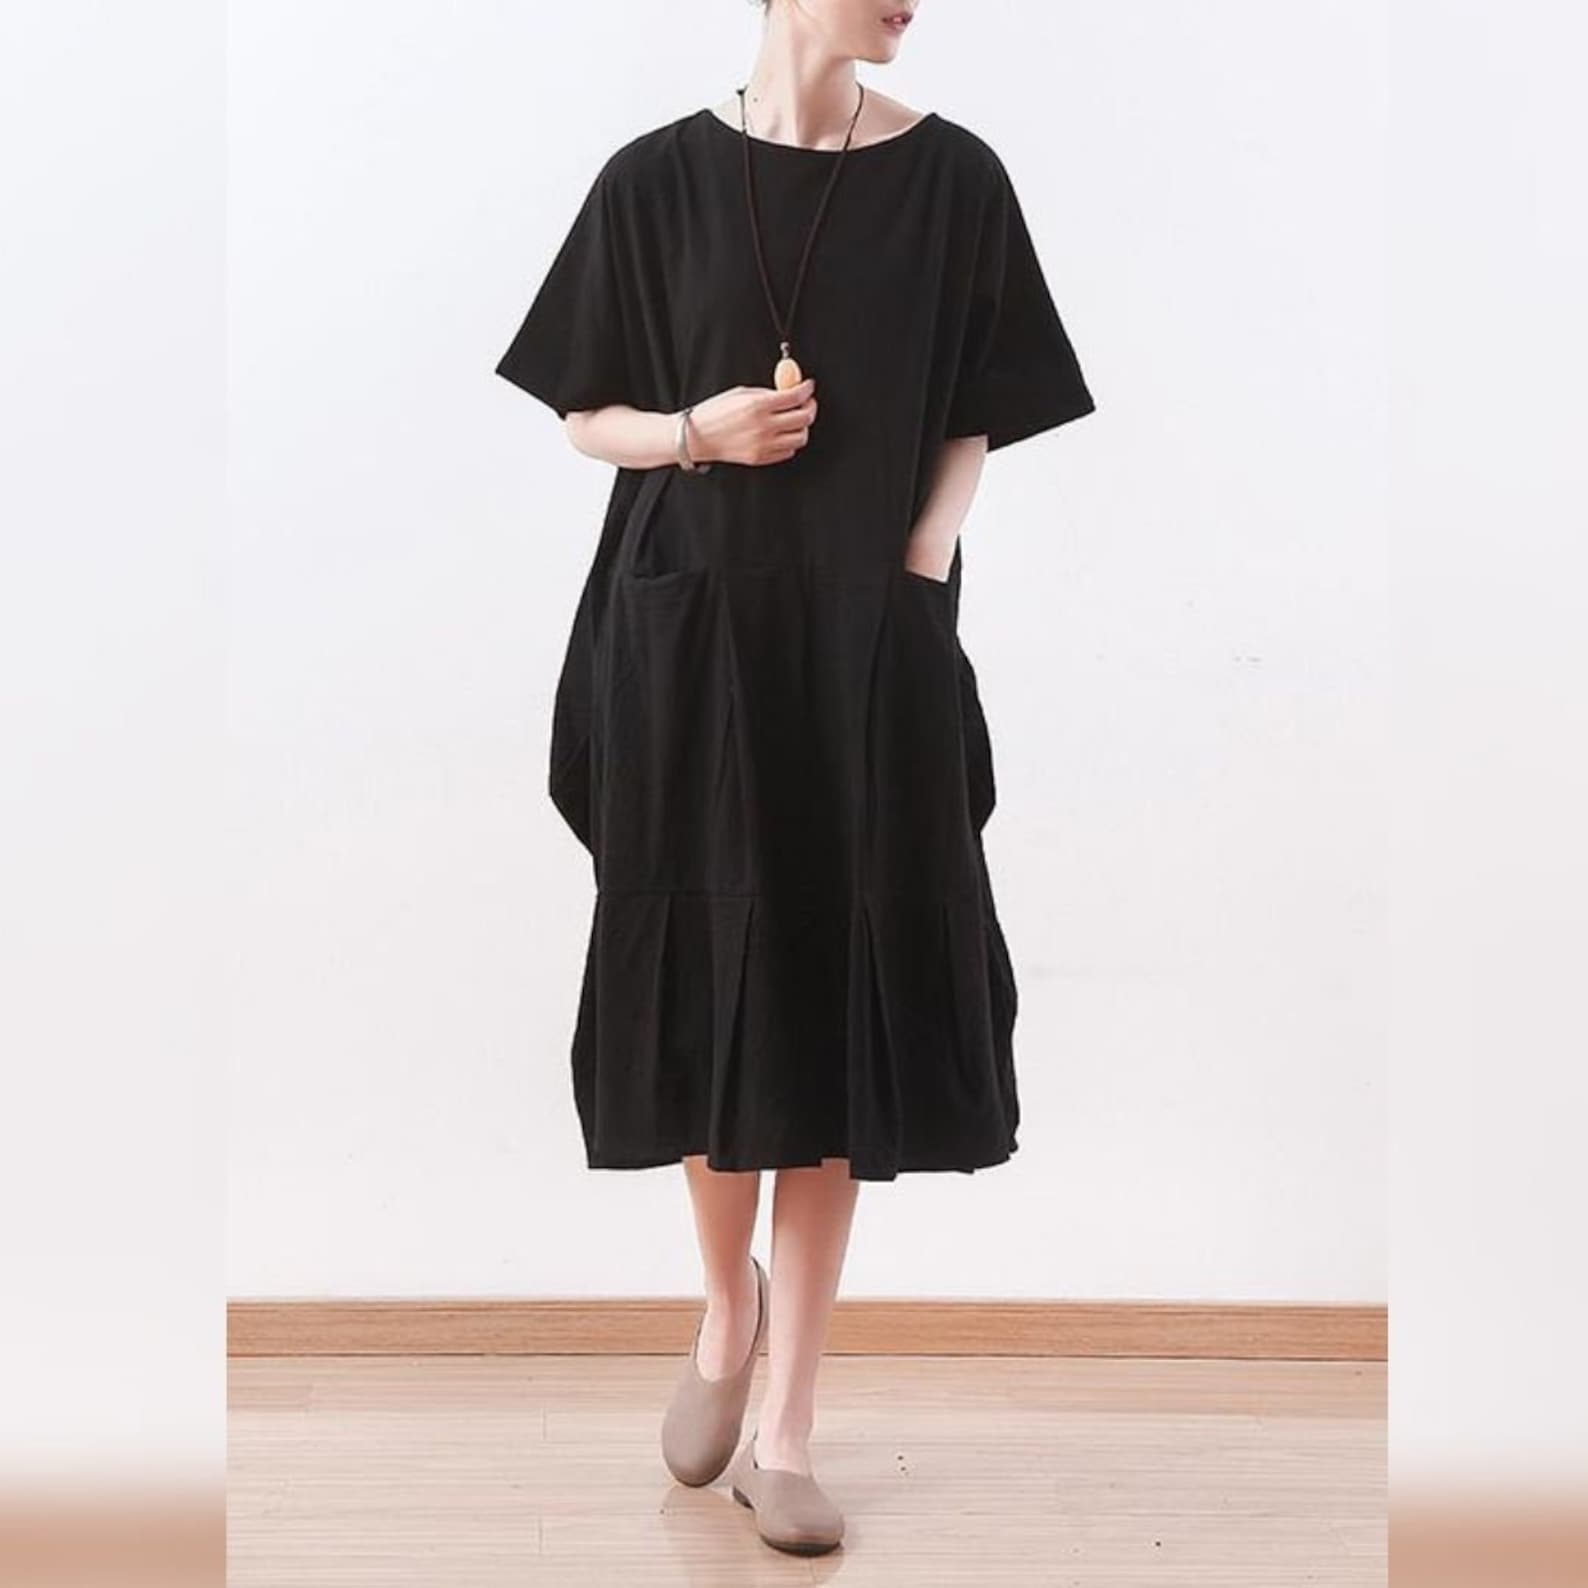 Casual Linen Dress Black Linen Dress Linen Dress Linen | Etsy